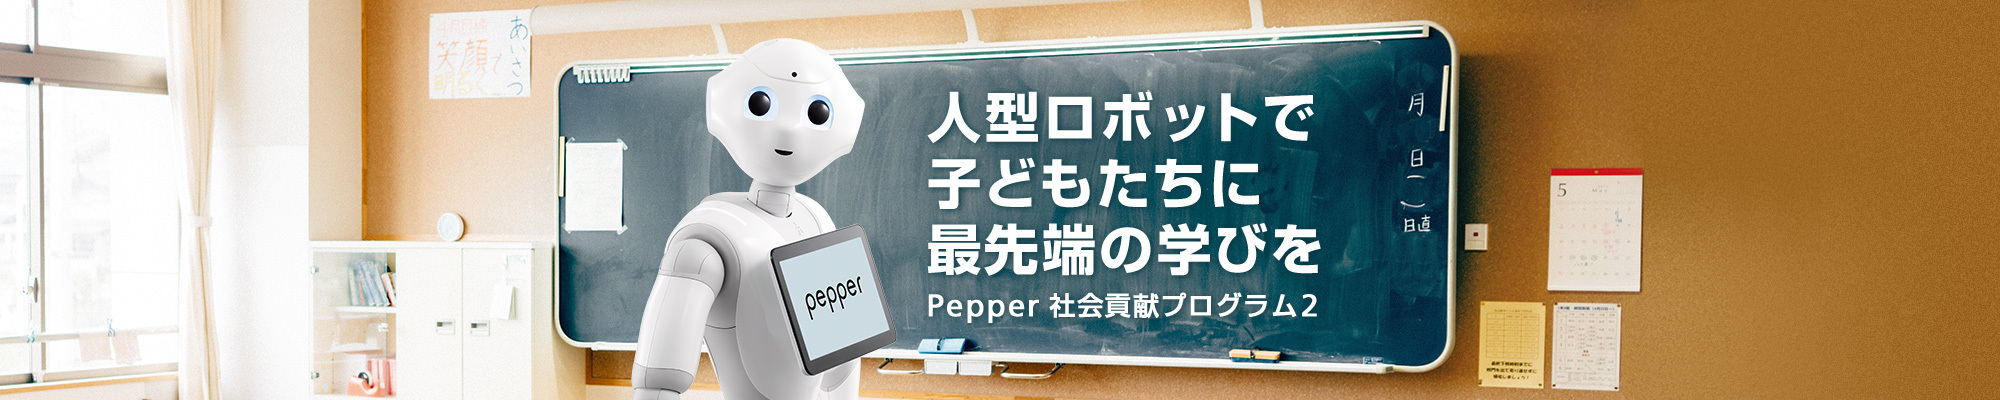 人型ロボットで子どもたちに最先端の学びを Pepper 社会貢献プログラム2